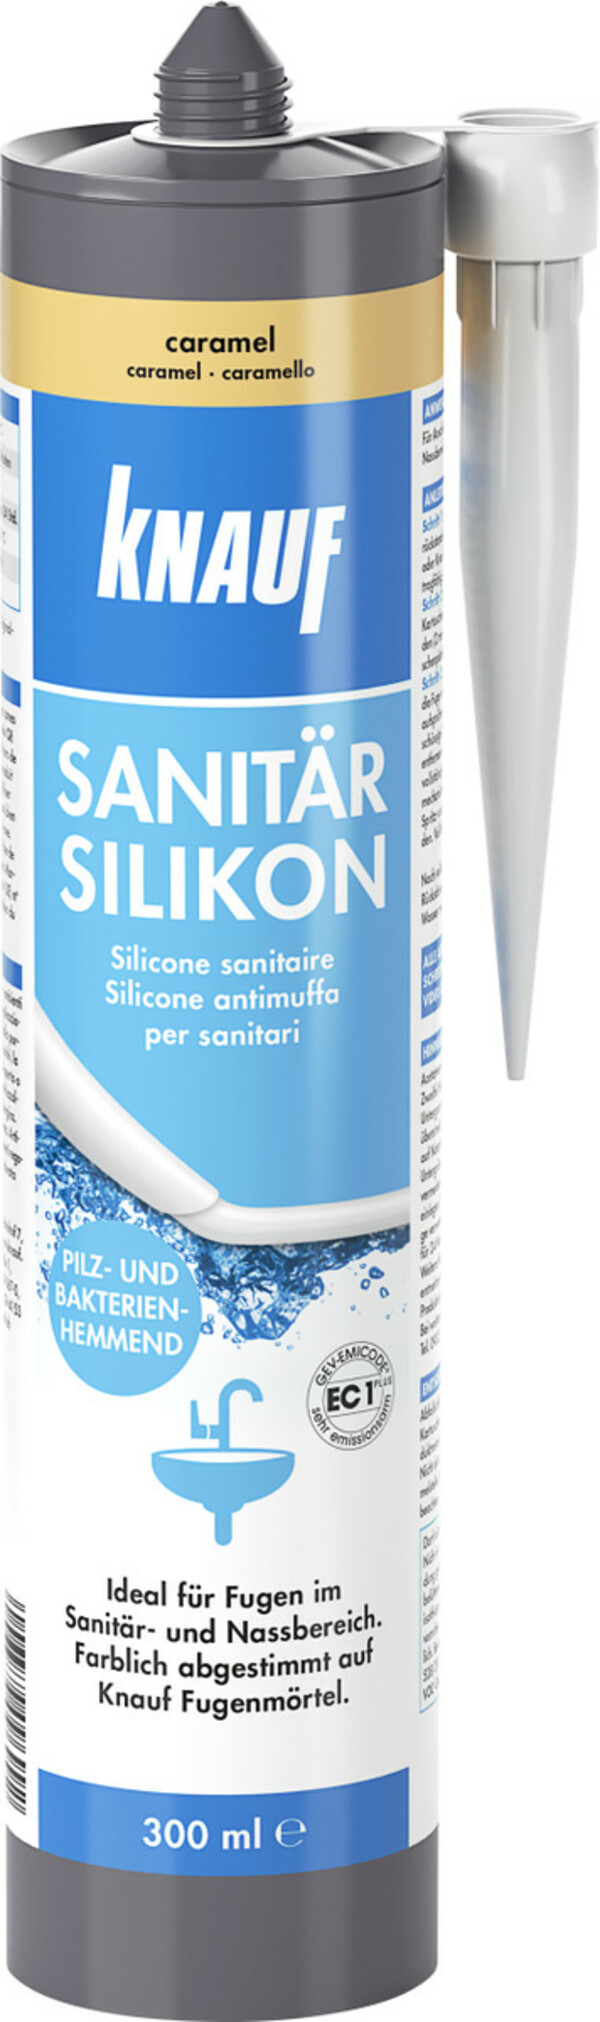 Bild 1 von Knauf Sanitär-Silikon
, 
caramel, 300 ml